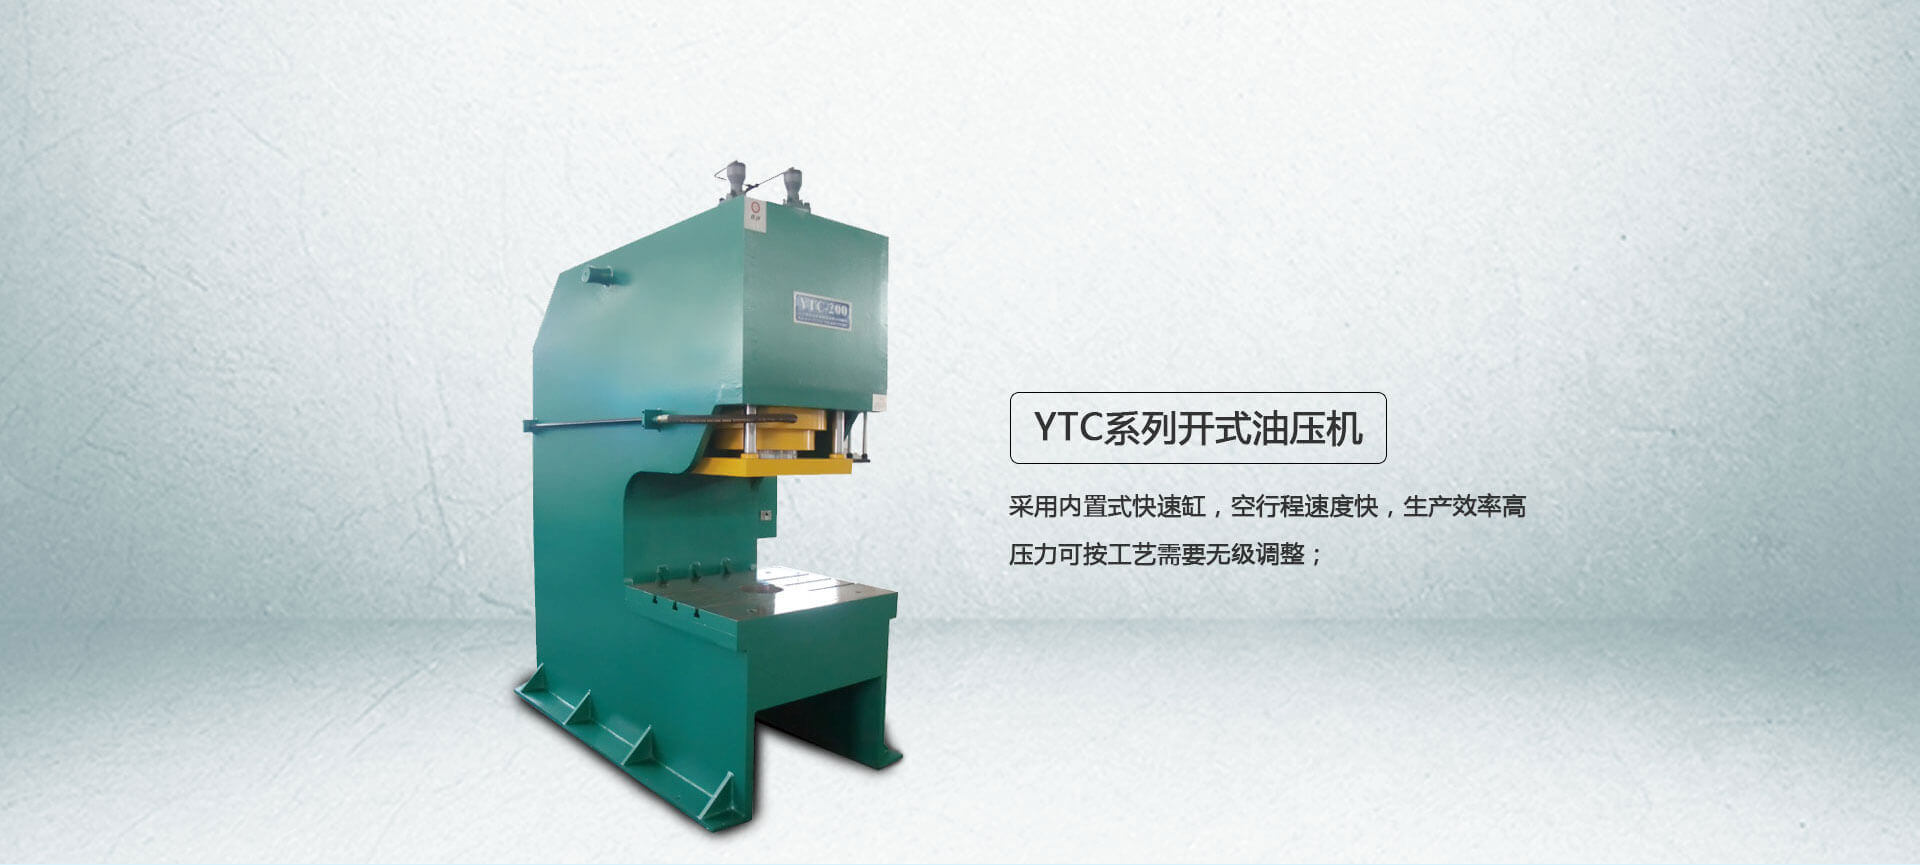 YTC系列弓形油压机